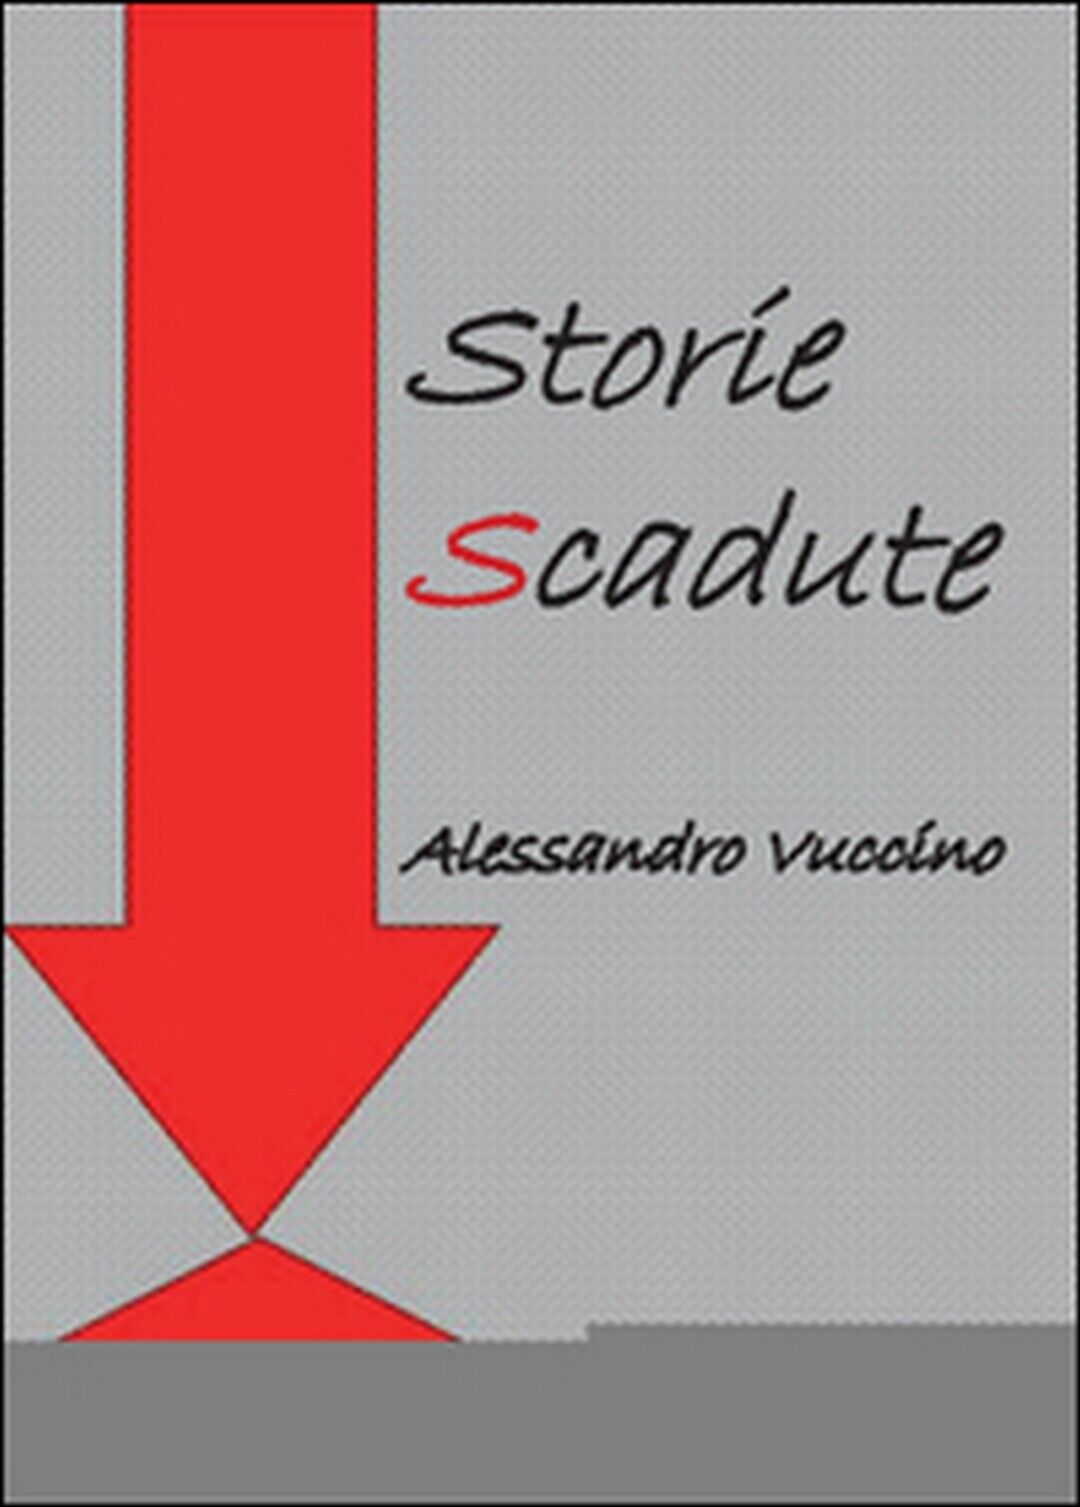 Storie scadute  di Alessandro Vuccino,  2015,  Youcanprint